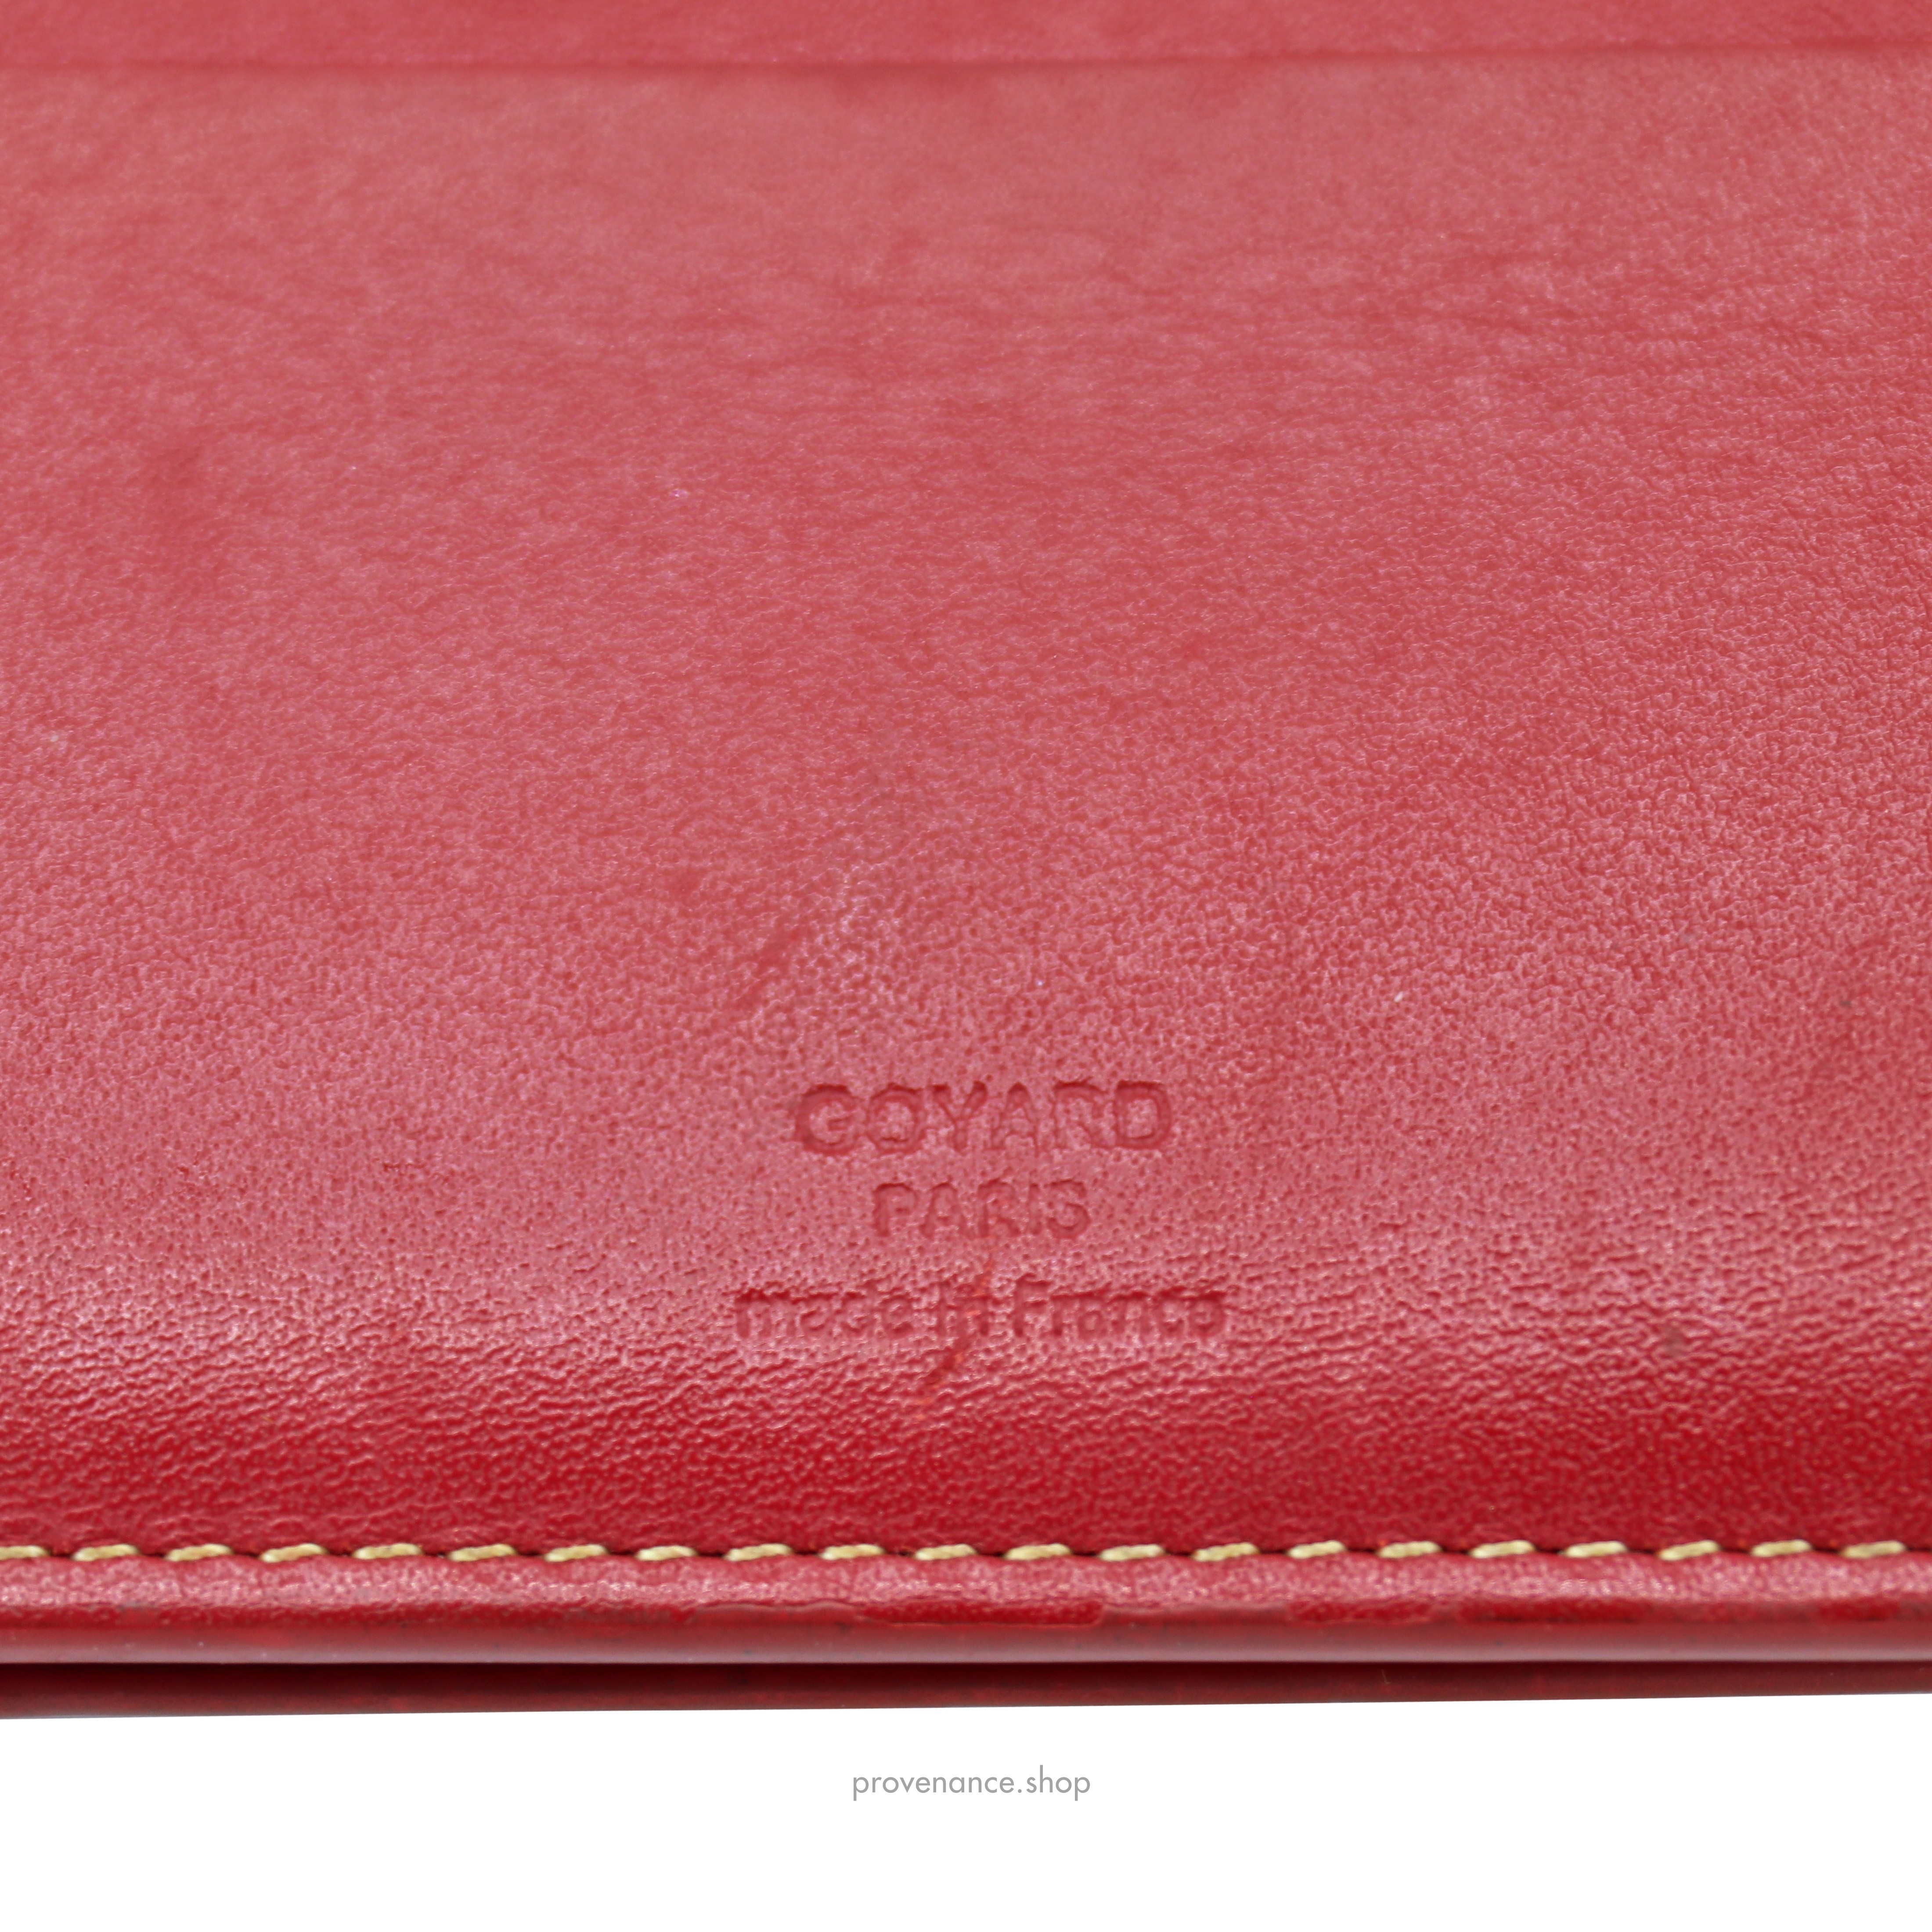 Richelieu Long Wallet - Red Goyardine - 7